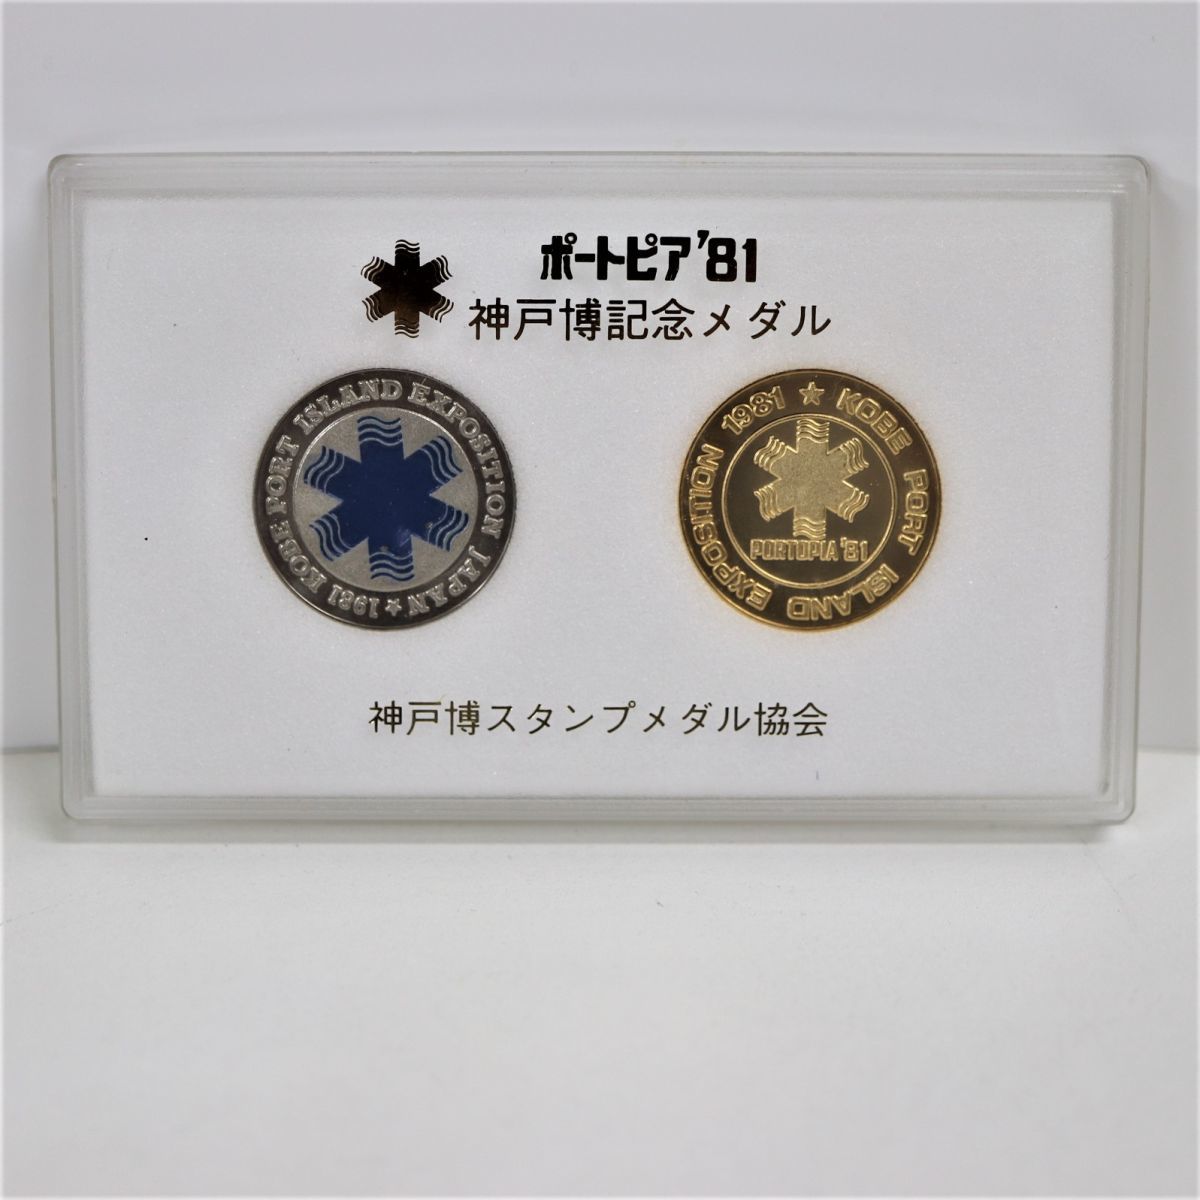  порт Piaa *81 Kobe . память медаль Kobe . штамп медаль ассоциация в кейсе сувенир *3836-1-5